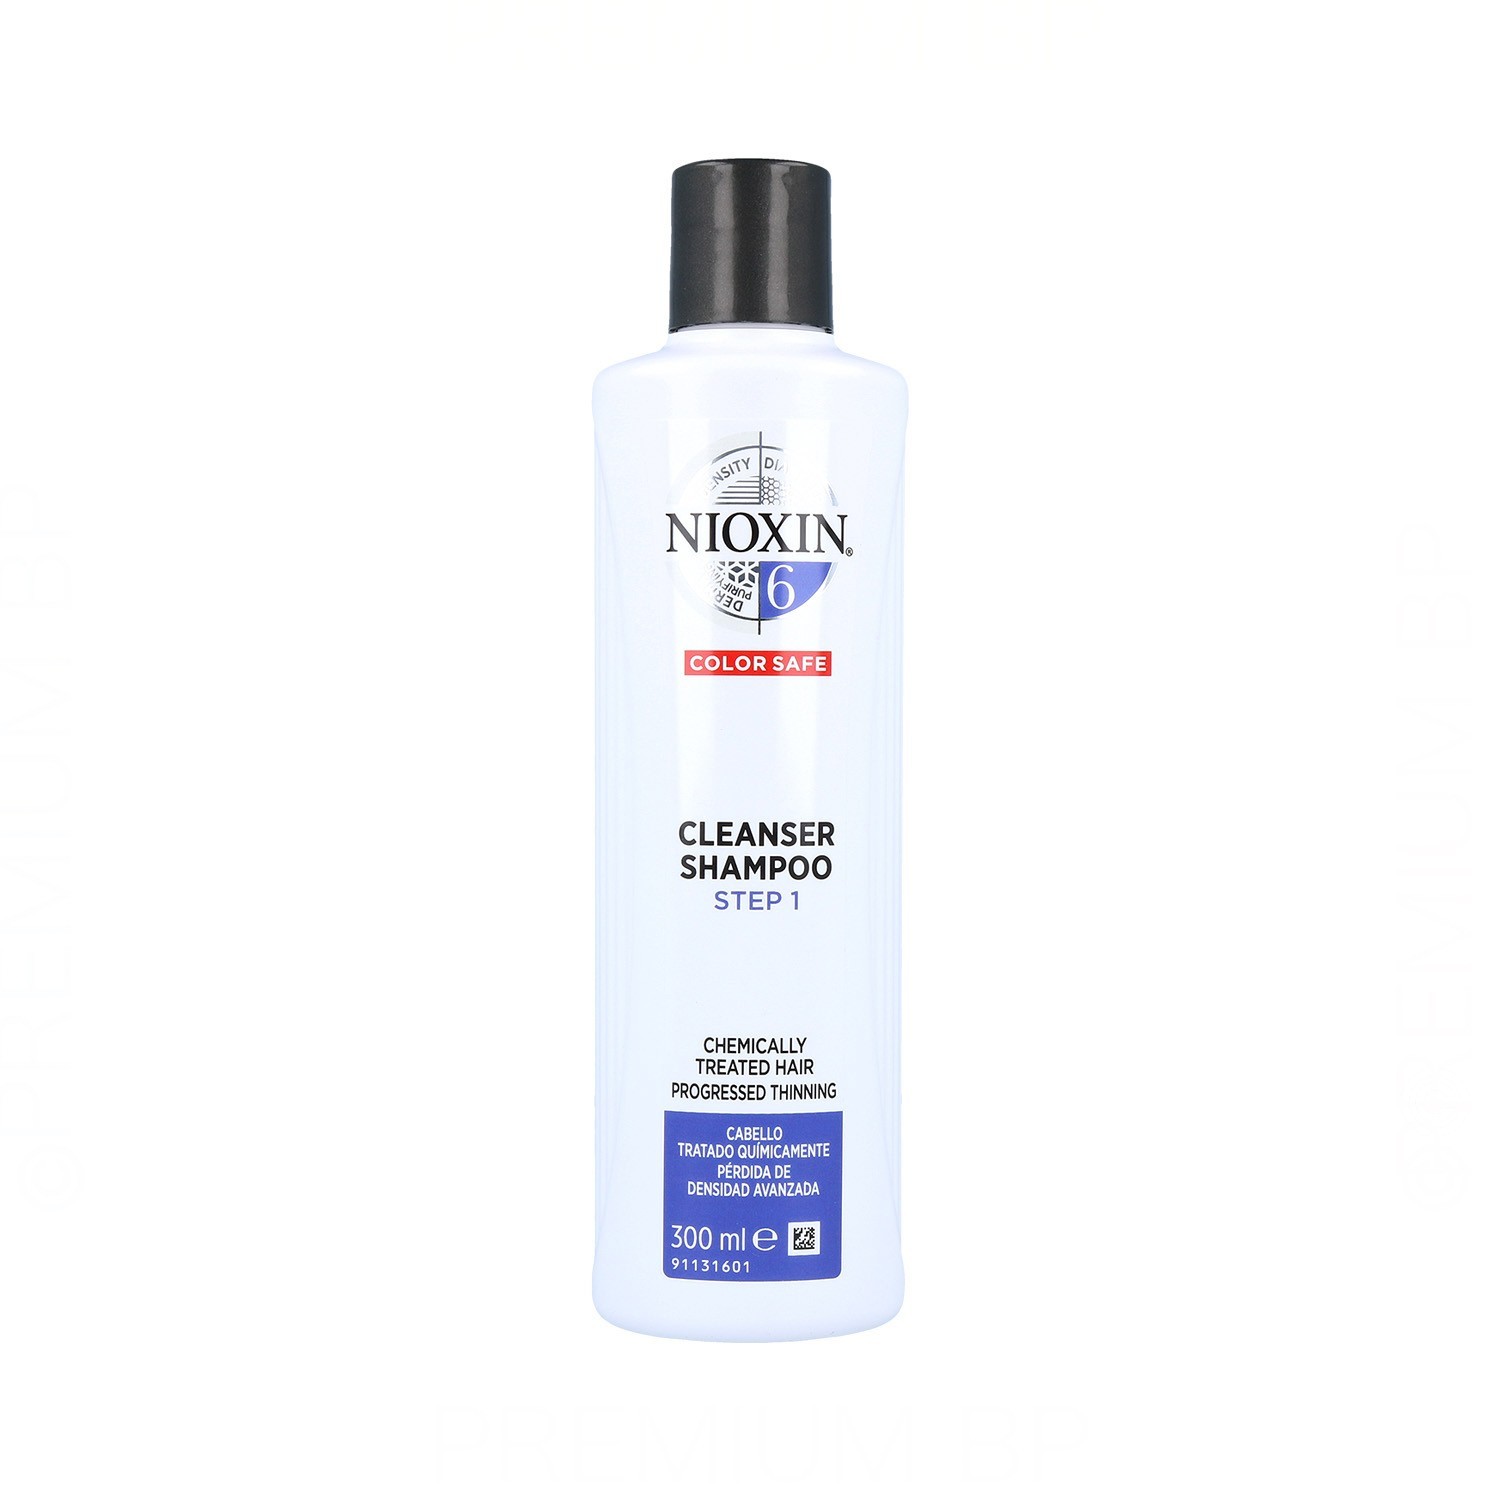 Wella Nioxin Clean Shampoo System 6 Treated Hair Advance 300 ml